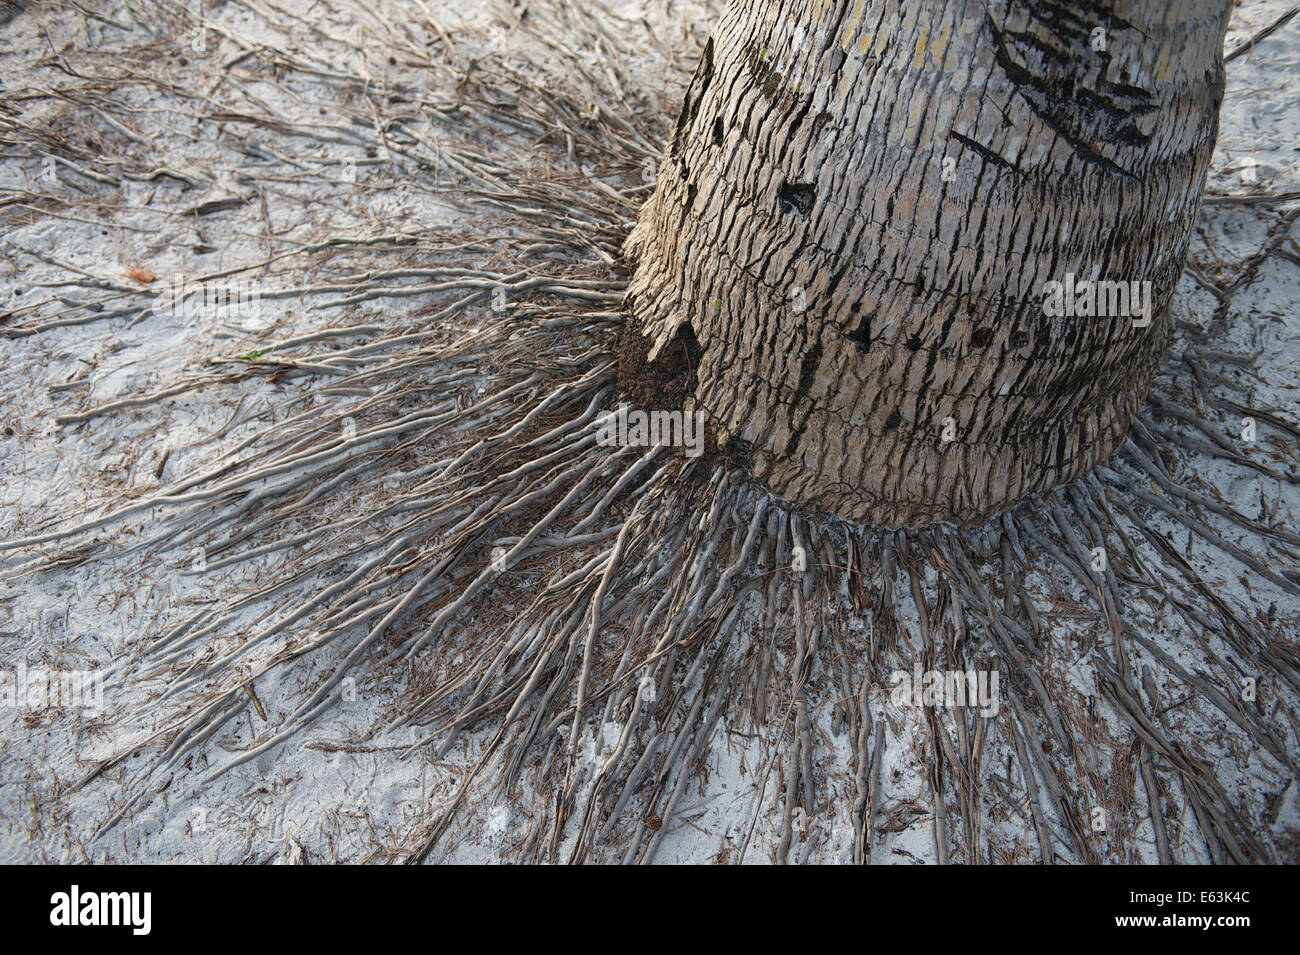 Palm tree altérés avec base de racines tentaculaires en plage de sable fin Banque D'Images